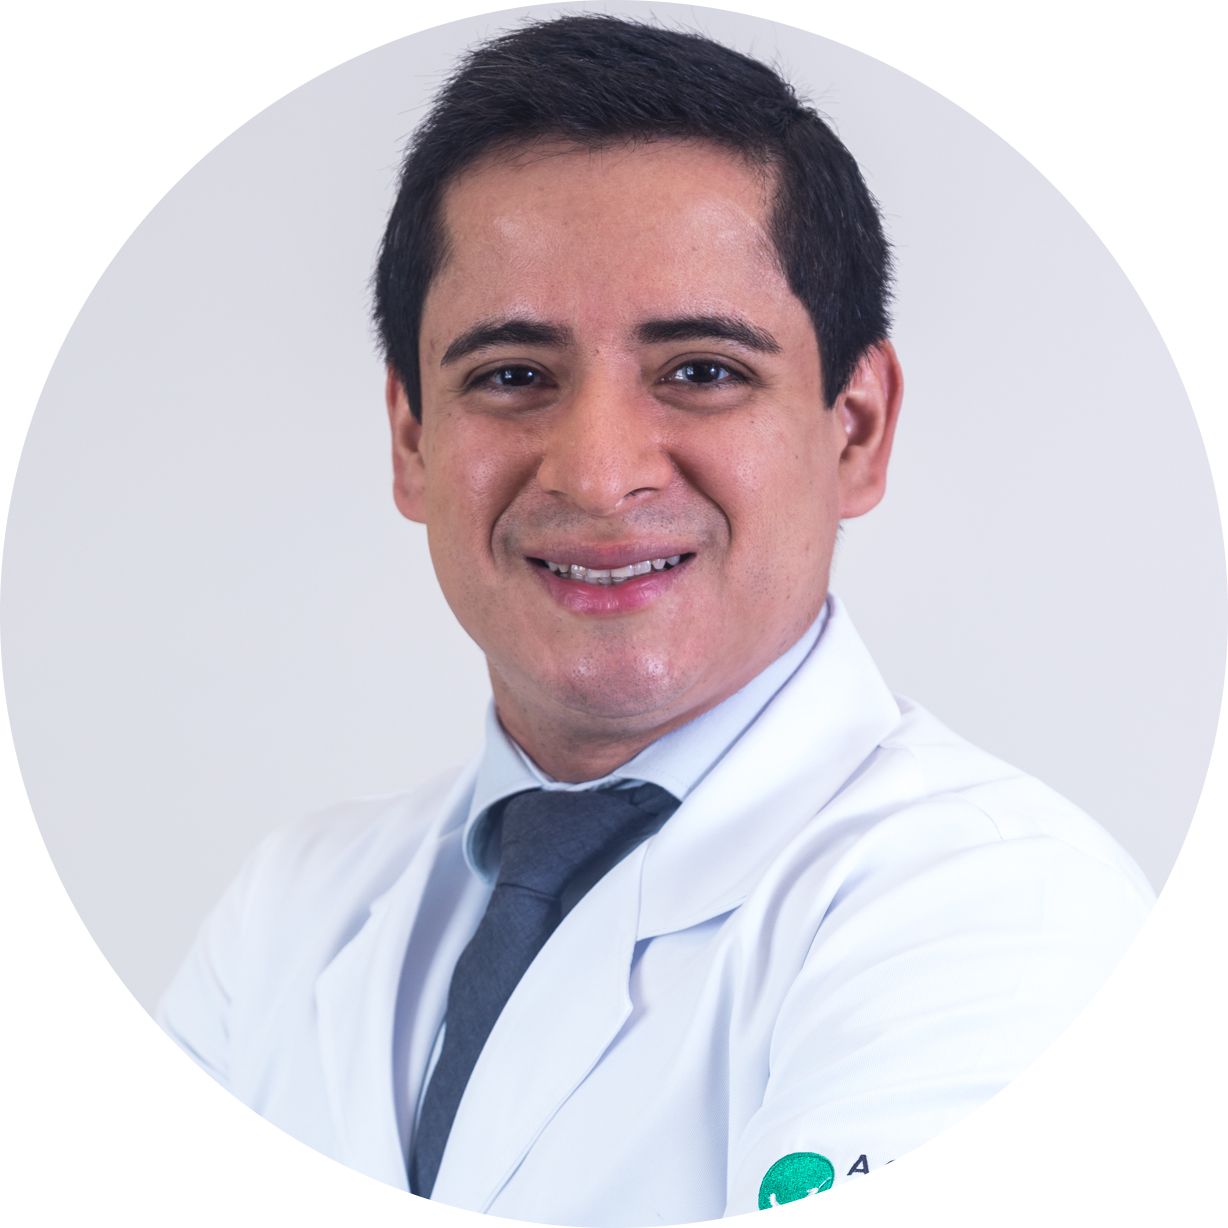 Dr. Ronaldo Pereira Souza